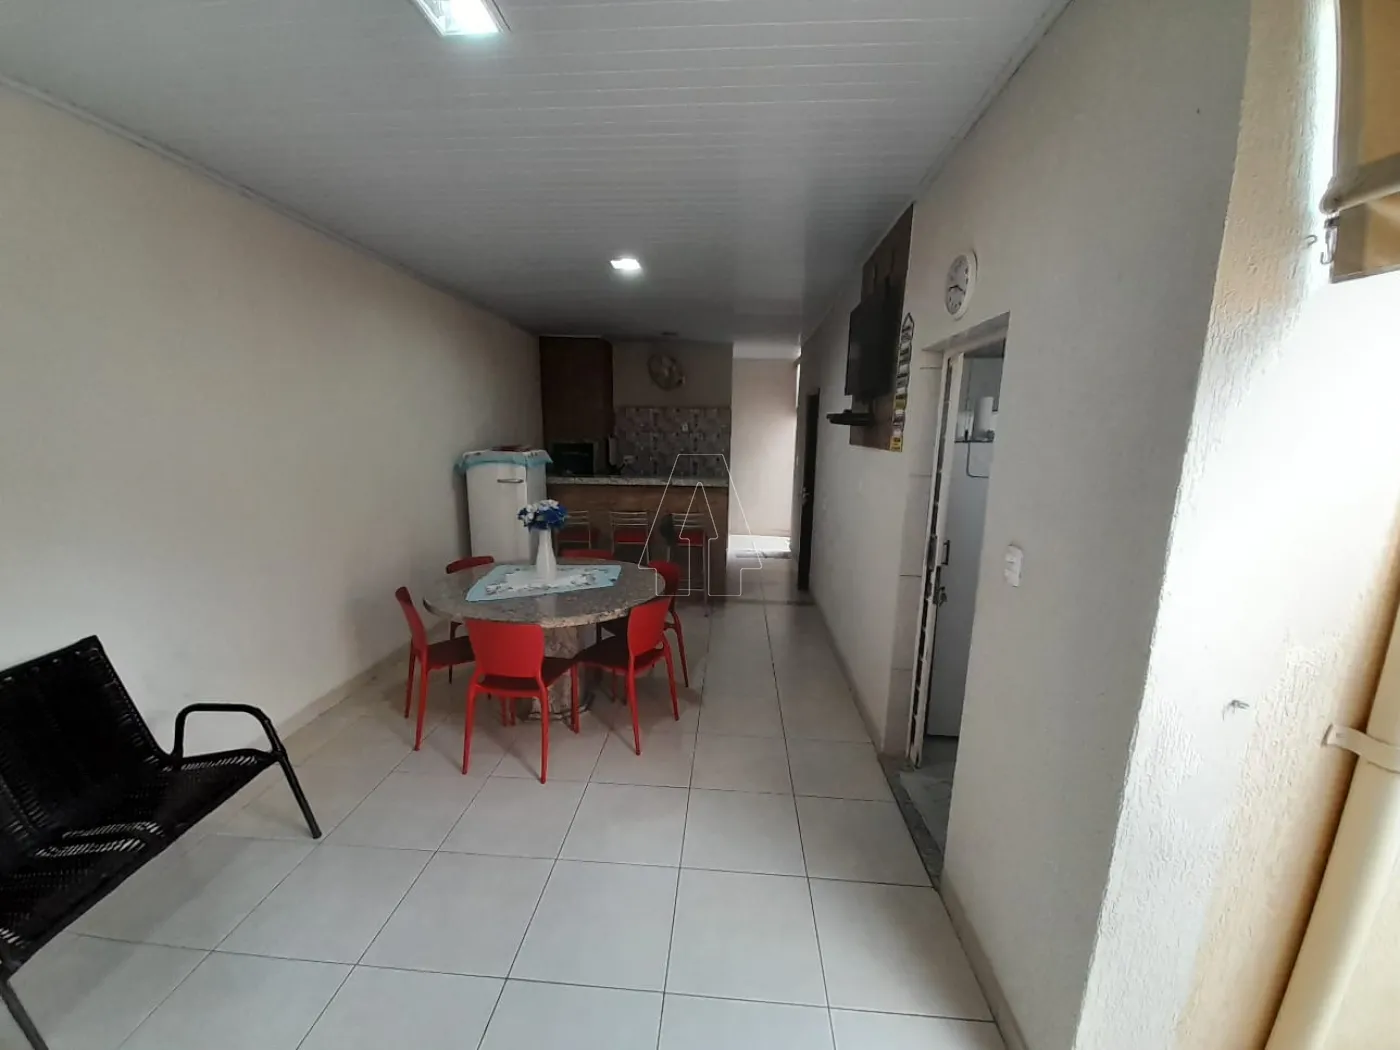 Comprar Casa / Residencial em Araçatuba R$ 600.000,00 - Foto 16